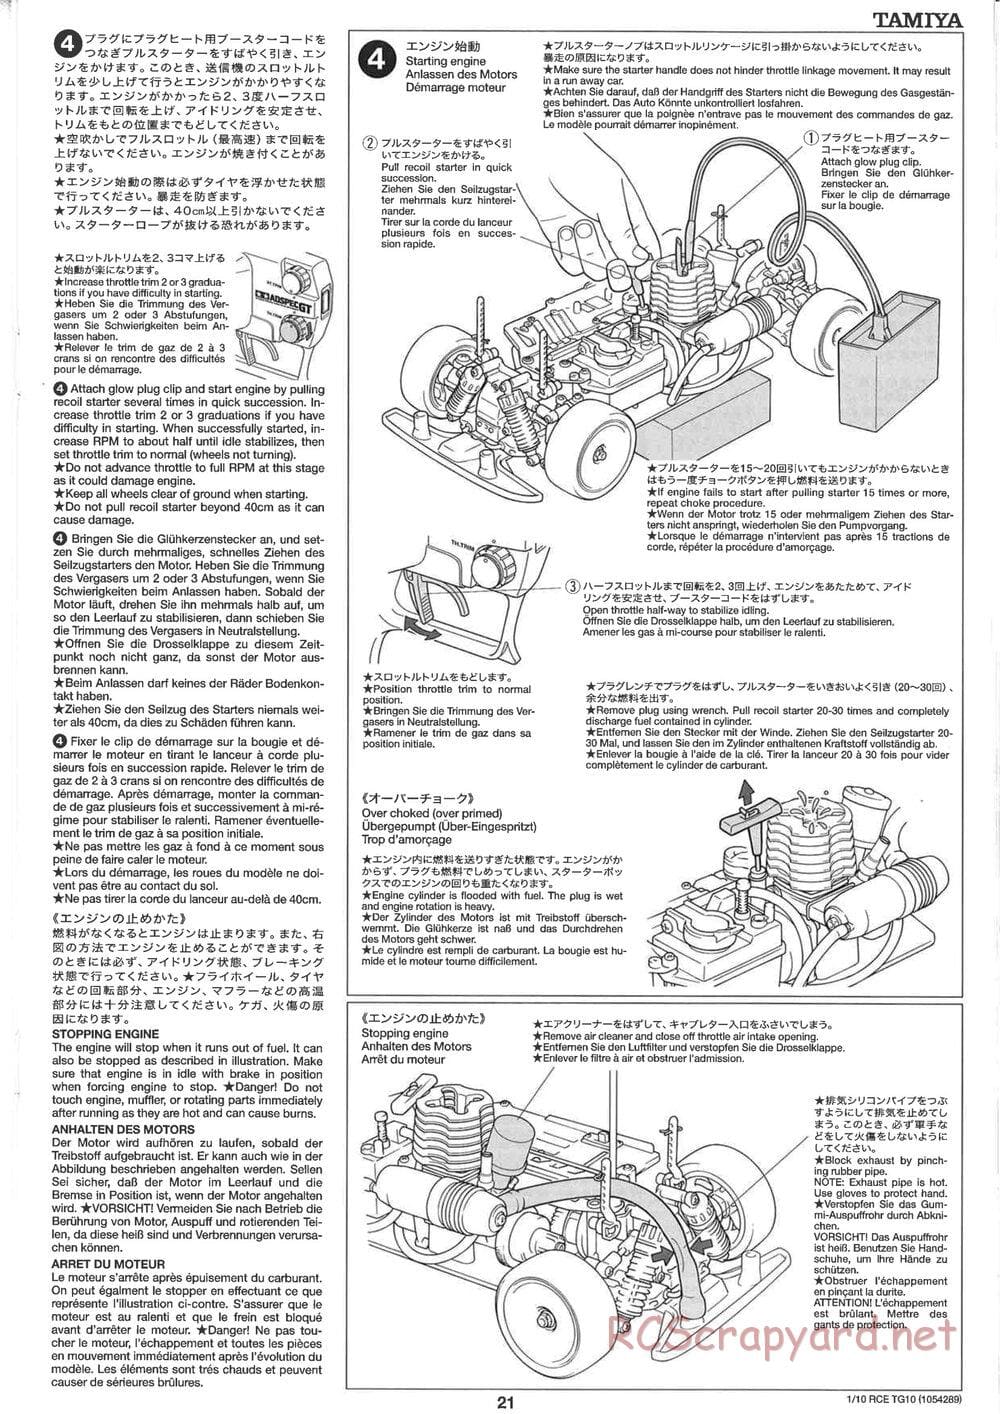 Tamiya - TG10 Mk.1 Chassis - Manual - Page 21